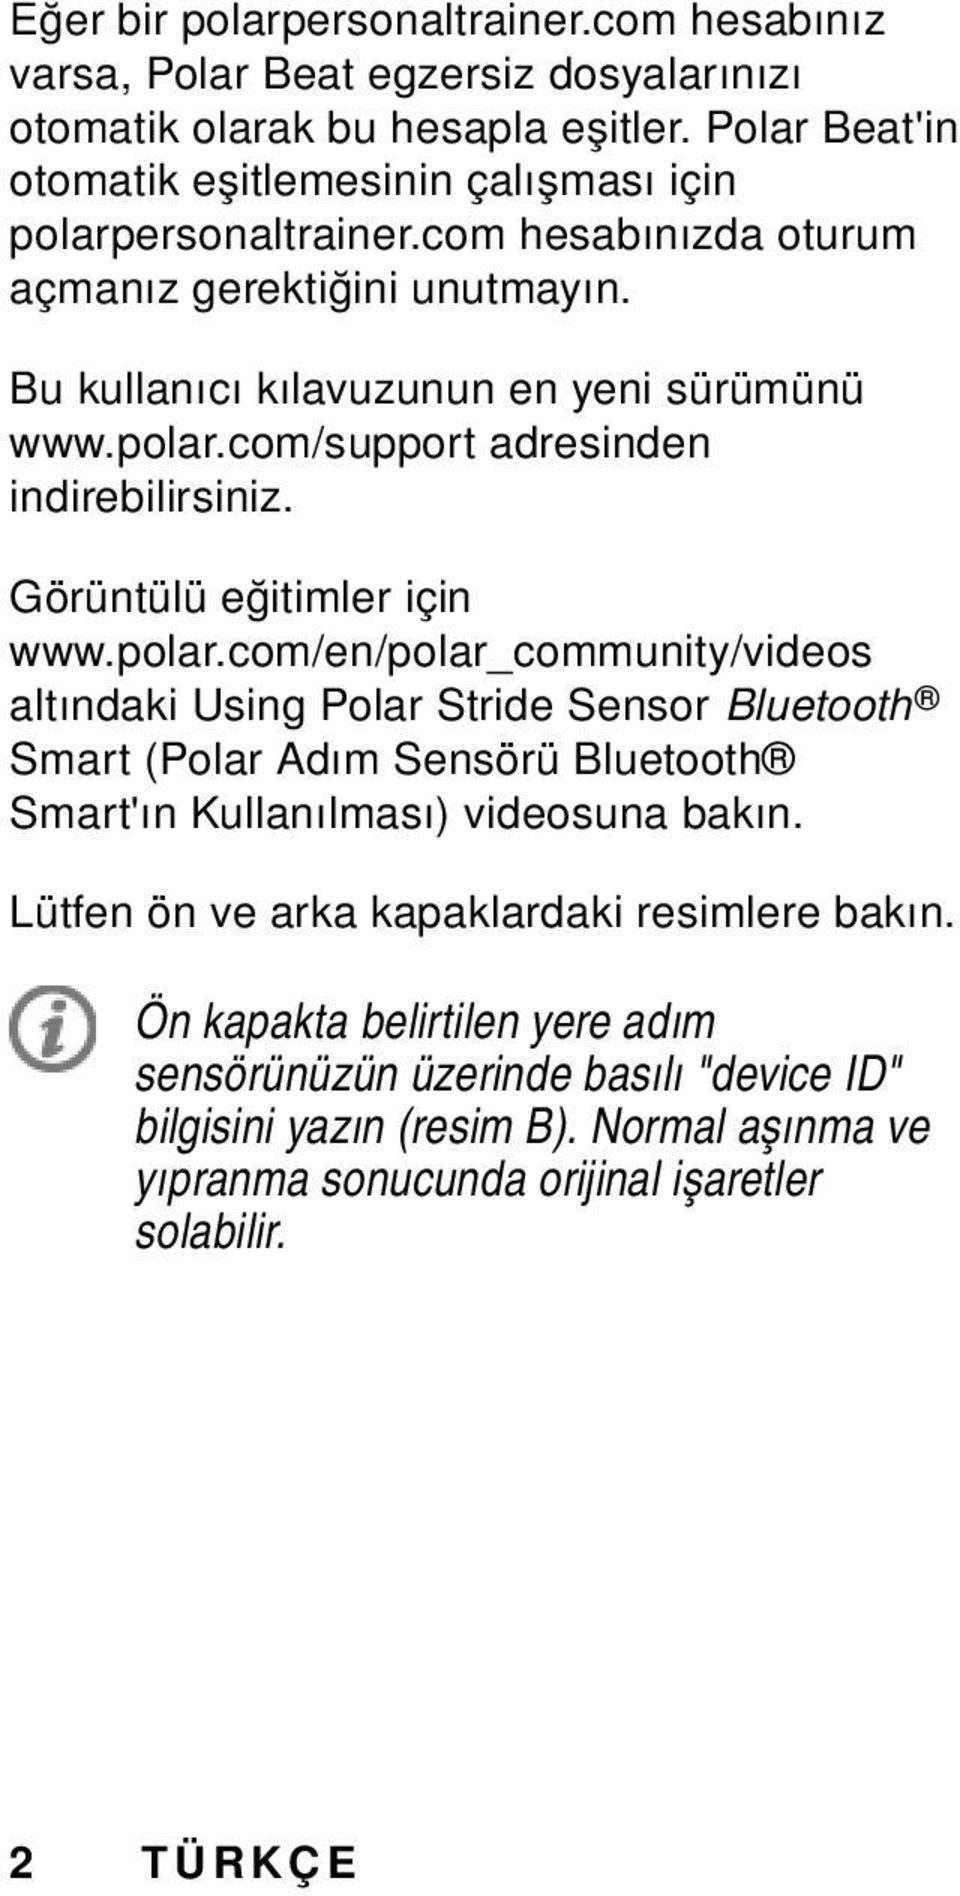 Görüntülü eğitimler için www.polar.com/en/polar_community/videos altındaki Using Polar Stride Sensor Bluetooth Smart (Polar Adım Sensörü Bluetooth Smart'ın Kullanılması) videosuna bakın.